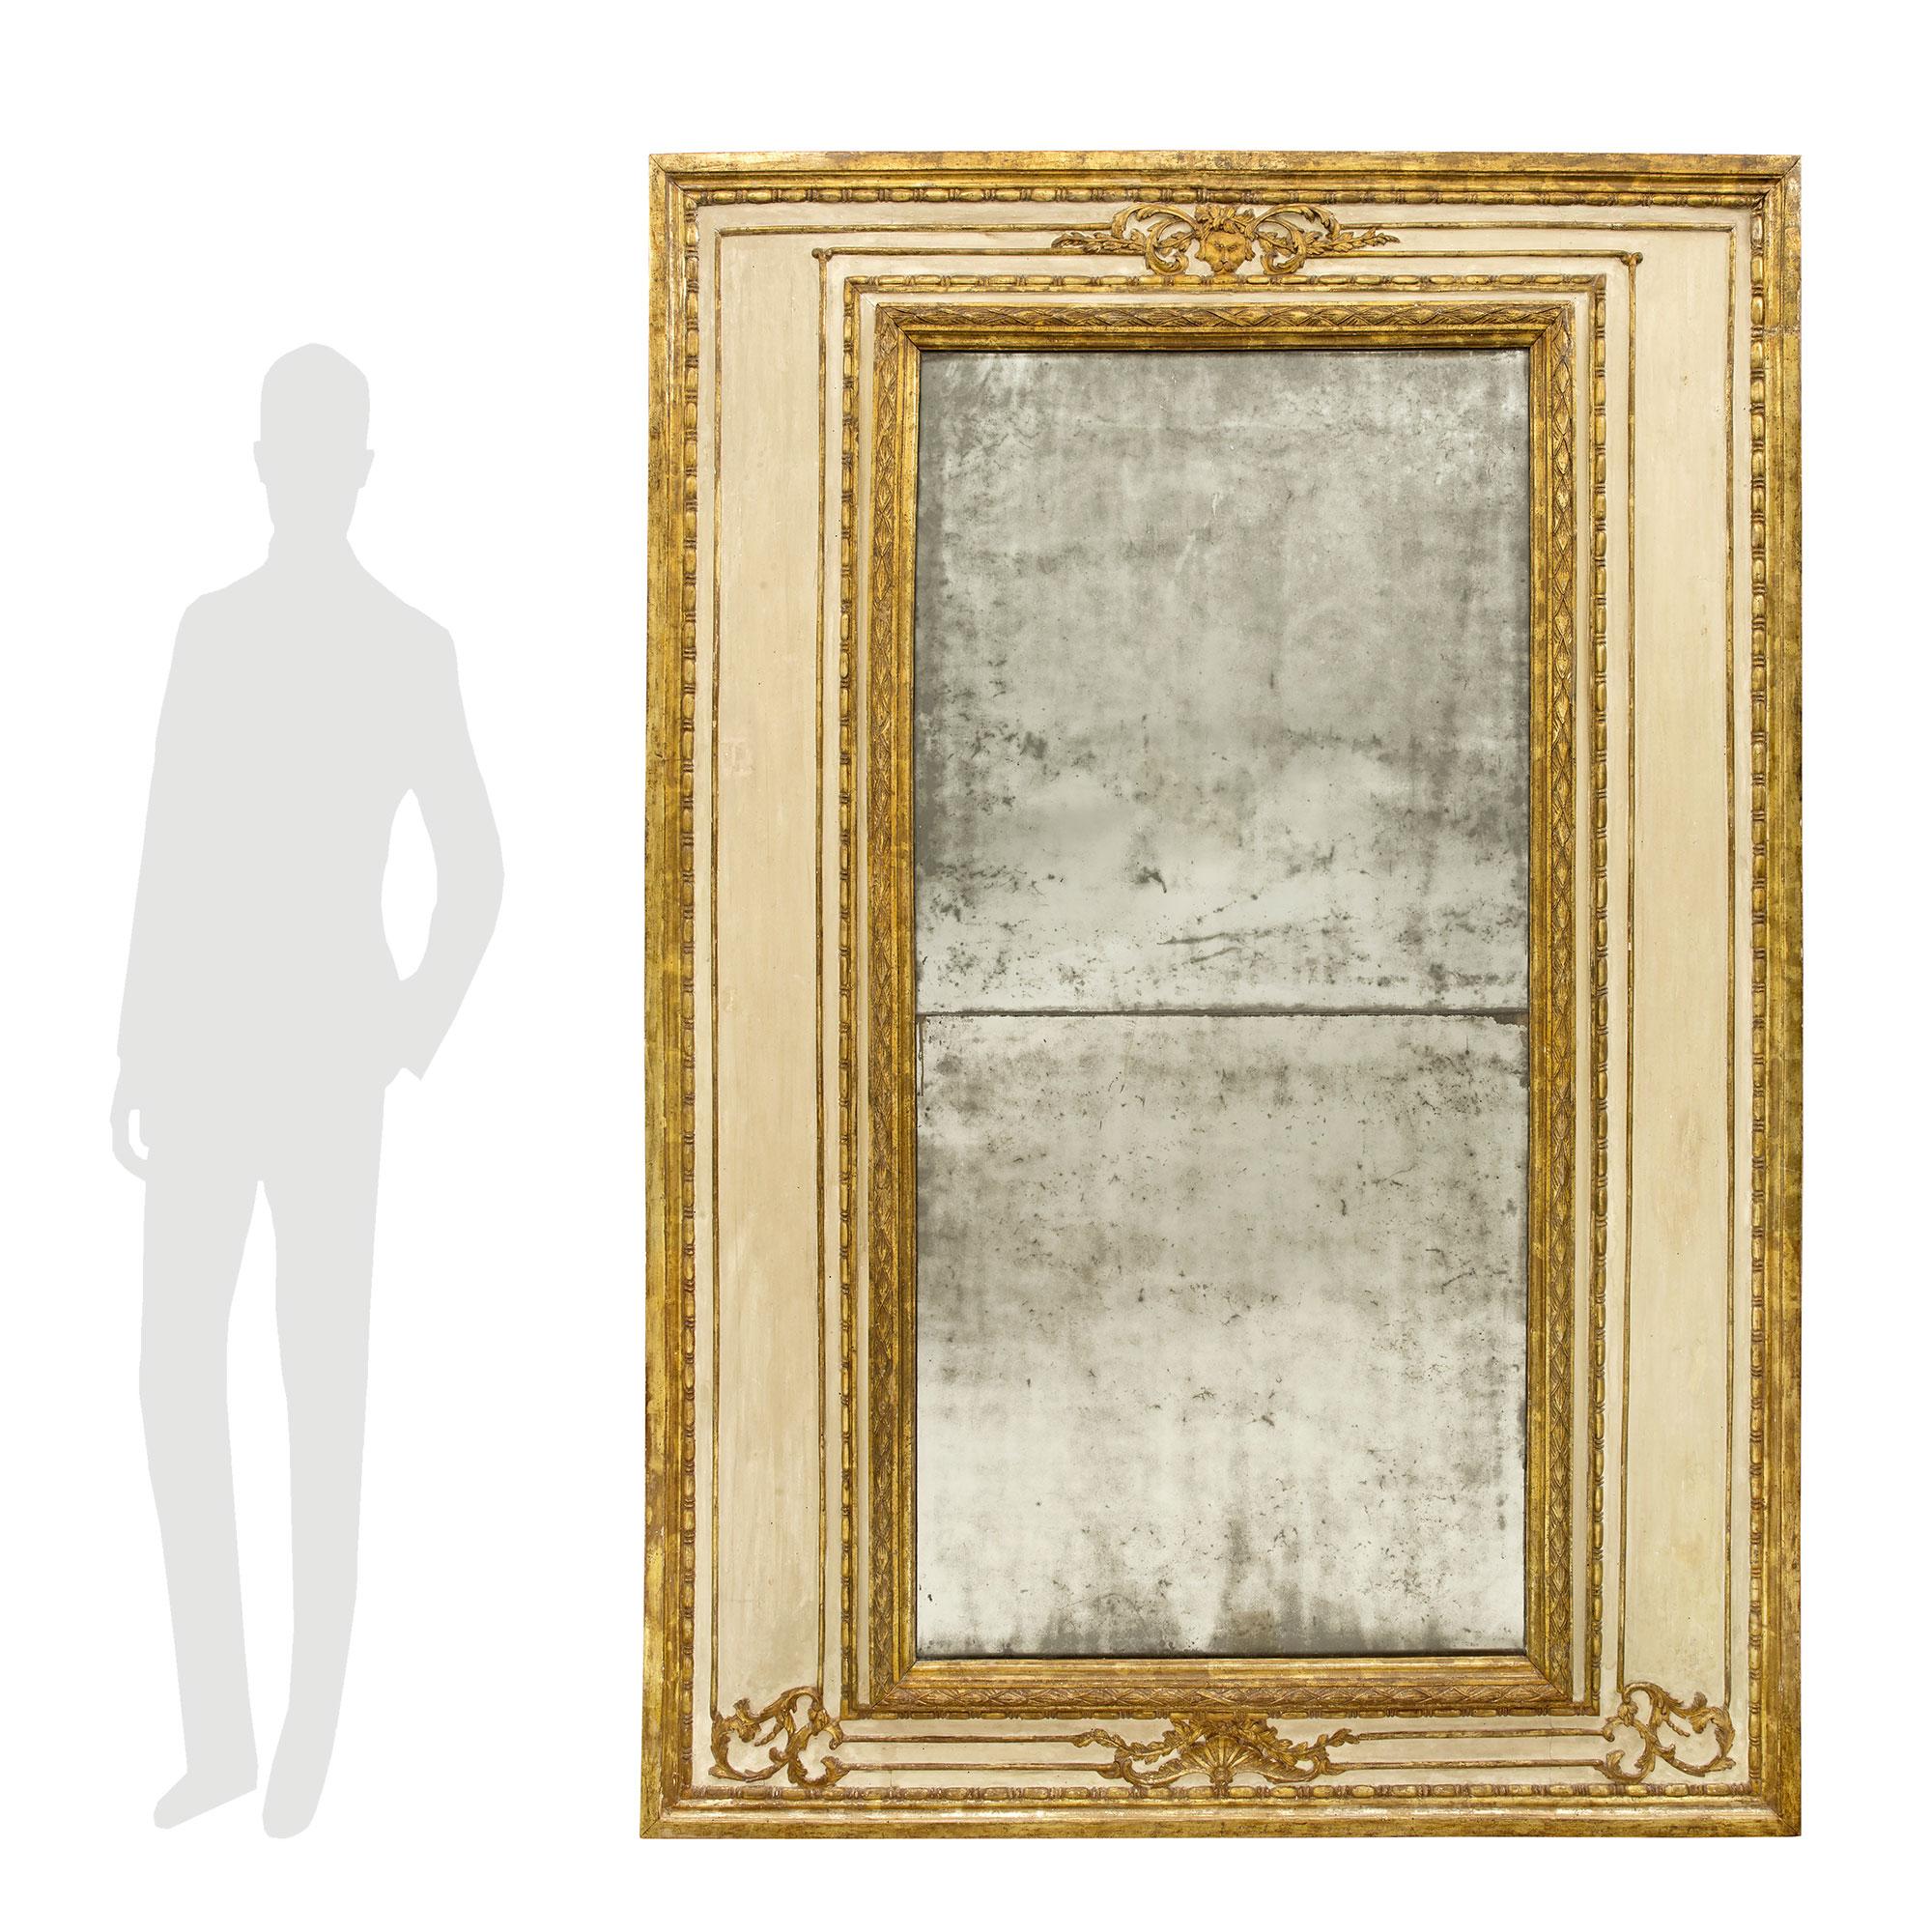 Un beau et grand miroir italien du 18ème siècle d'époque Louis XVI patiné et mecca. Les plaques de miroir d'origine sont encadrées d'une fine bordure mouchetée en forme de mecca et d'une bande en forme de losange feuillagé. En tête, d'élégants